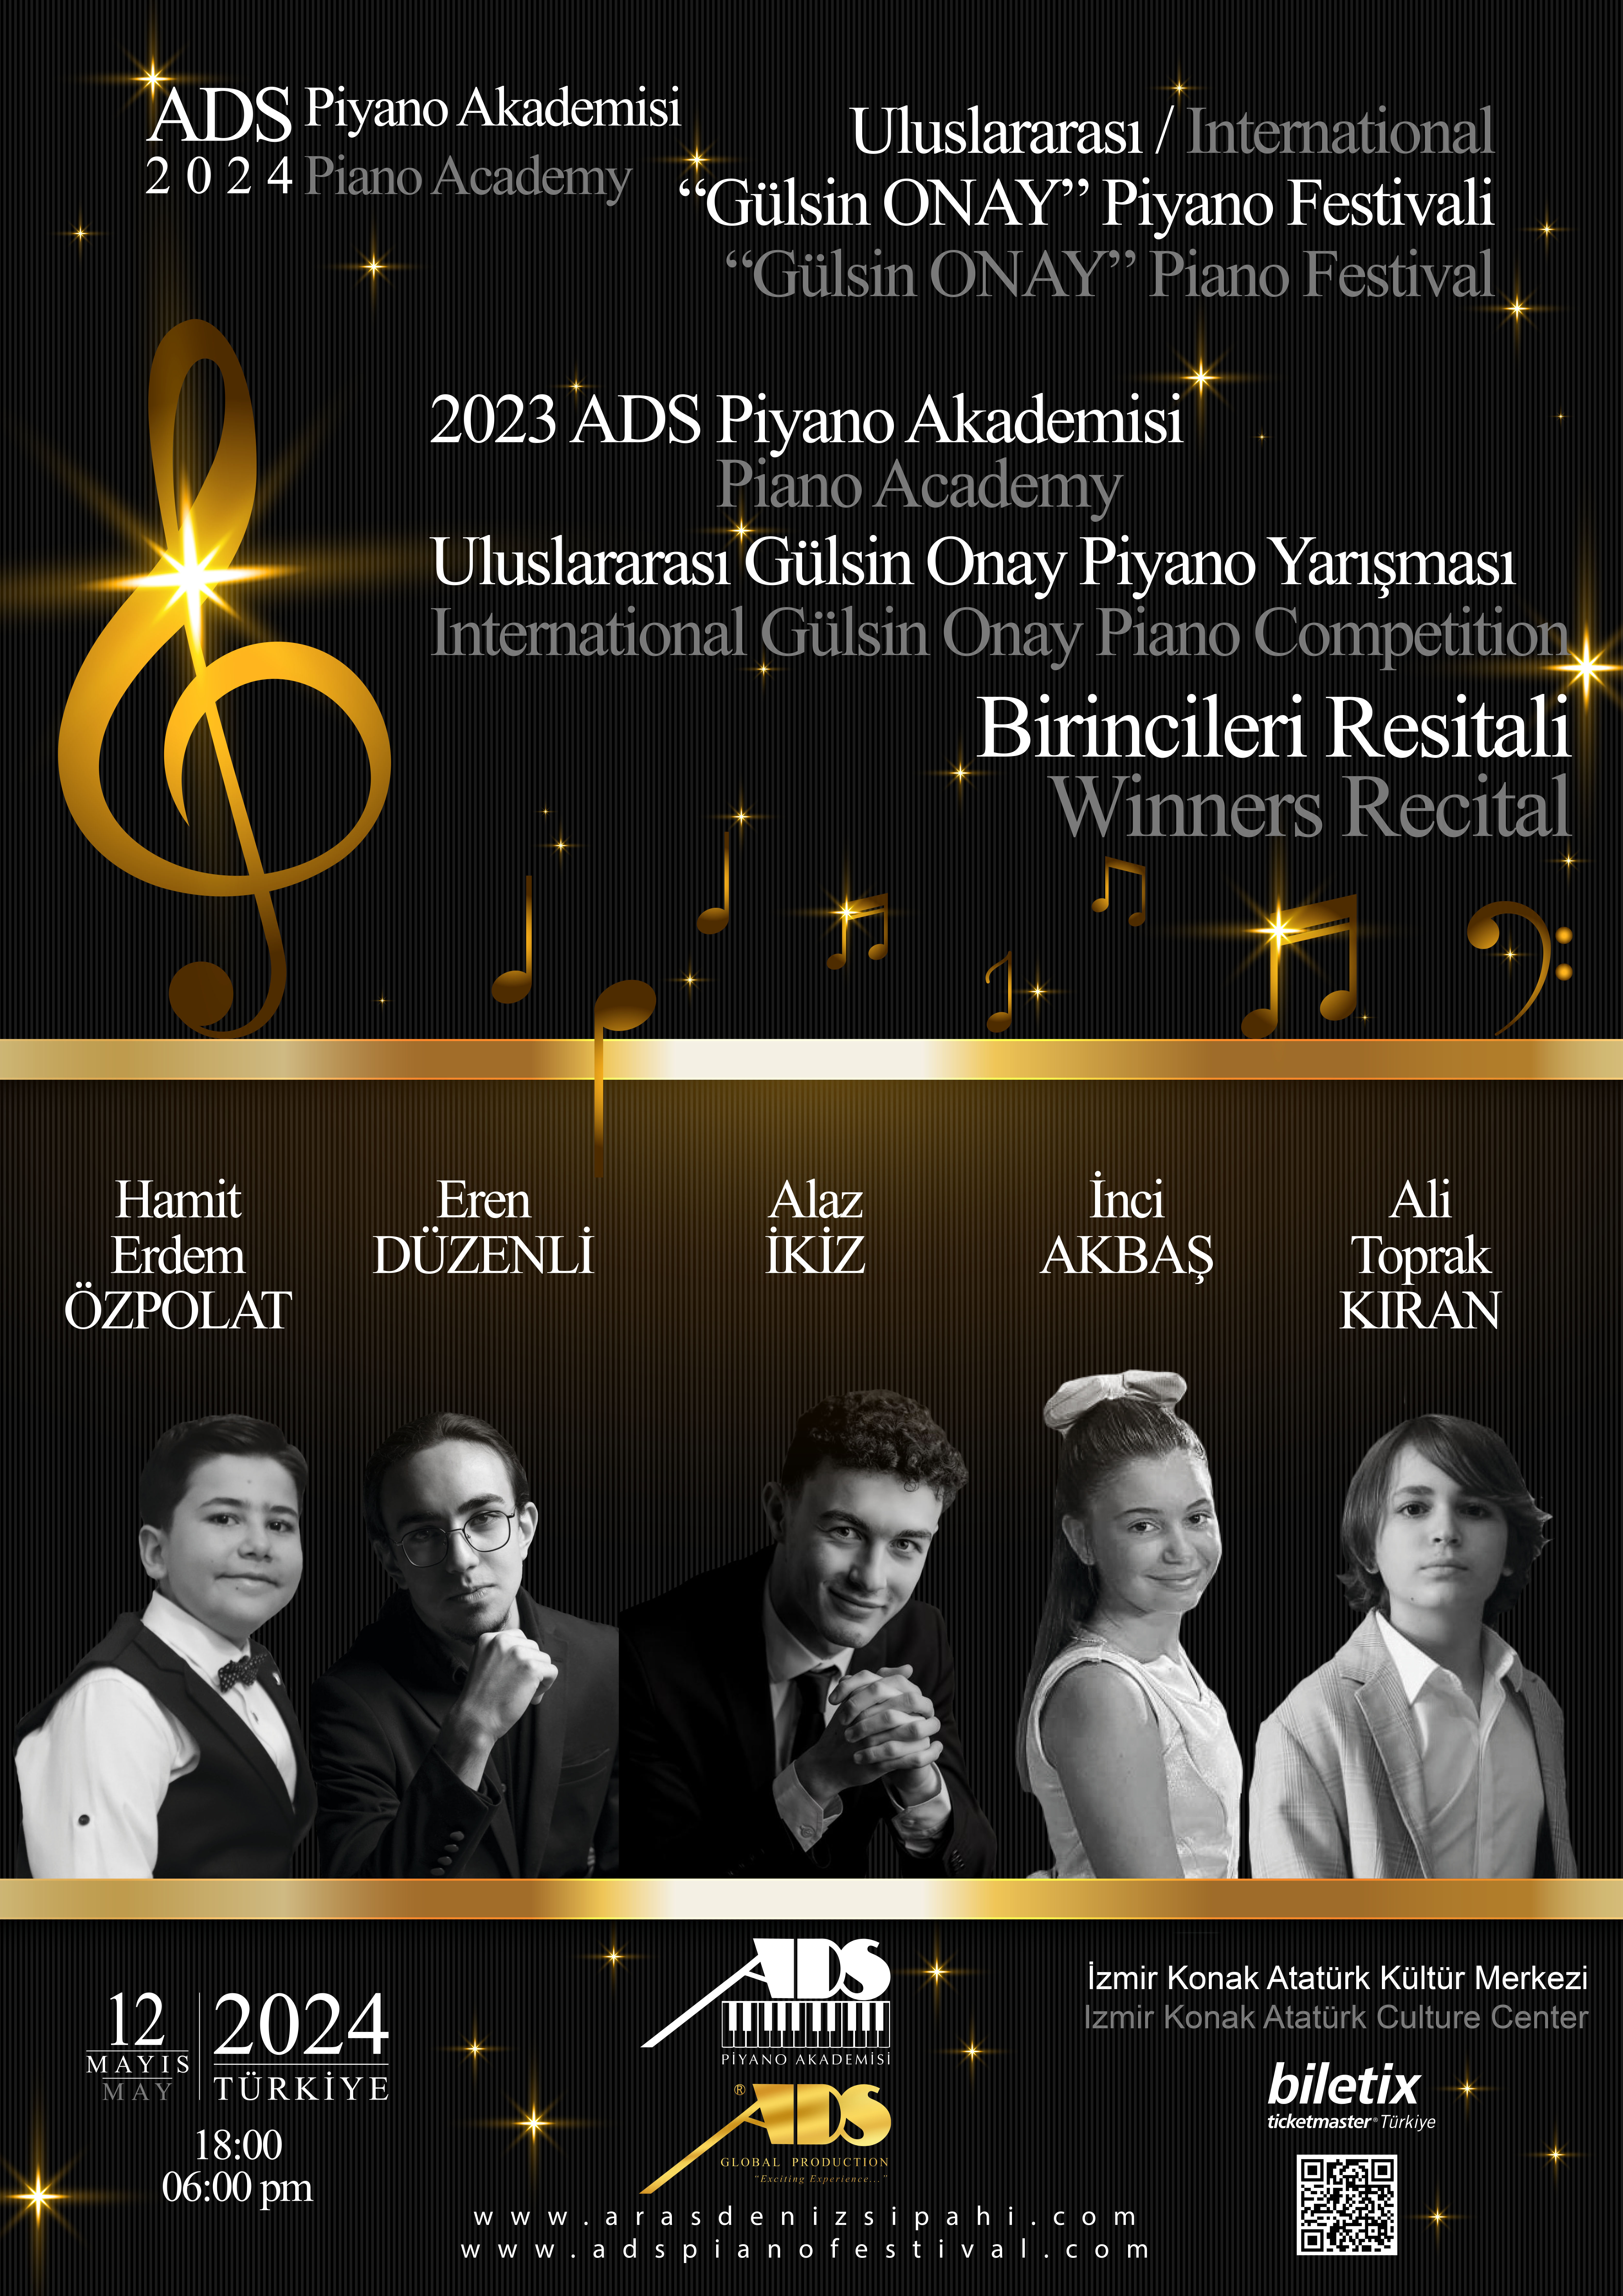 2023 ADS Piyano Akademisi Uluslararası 'Gülsin Onay' Piyano Yarışması Birincileri Resitali 12 Mayıs 2024'te İzmir Konak AKM'de!